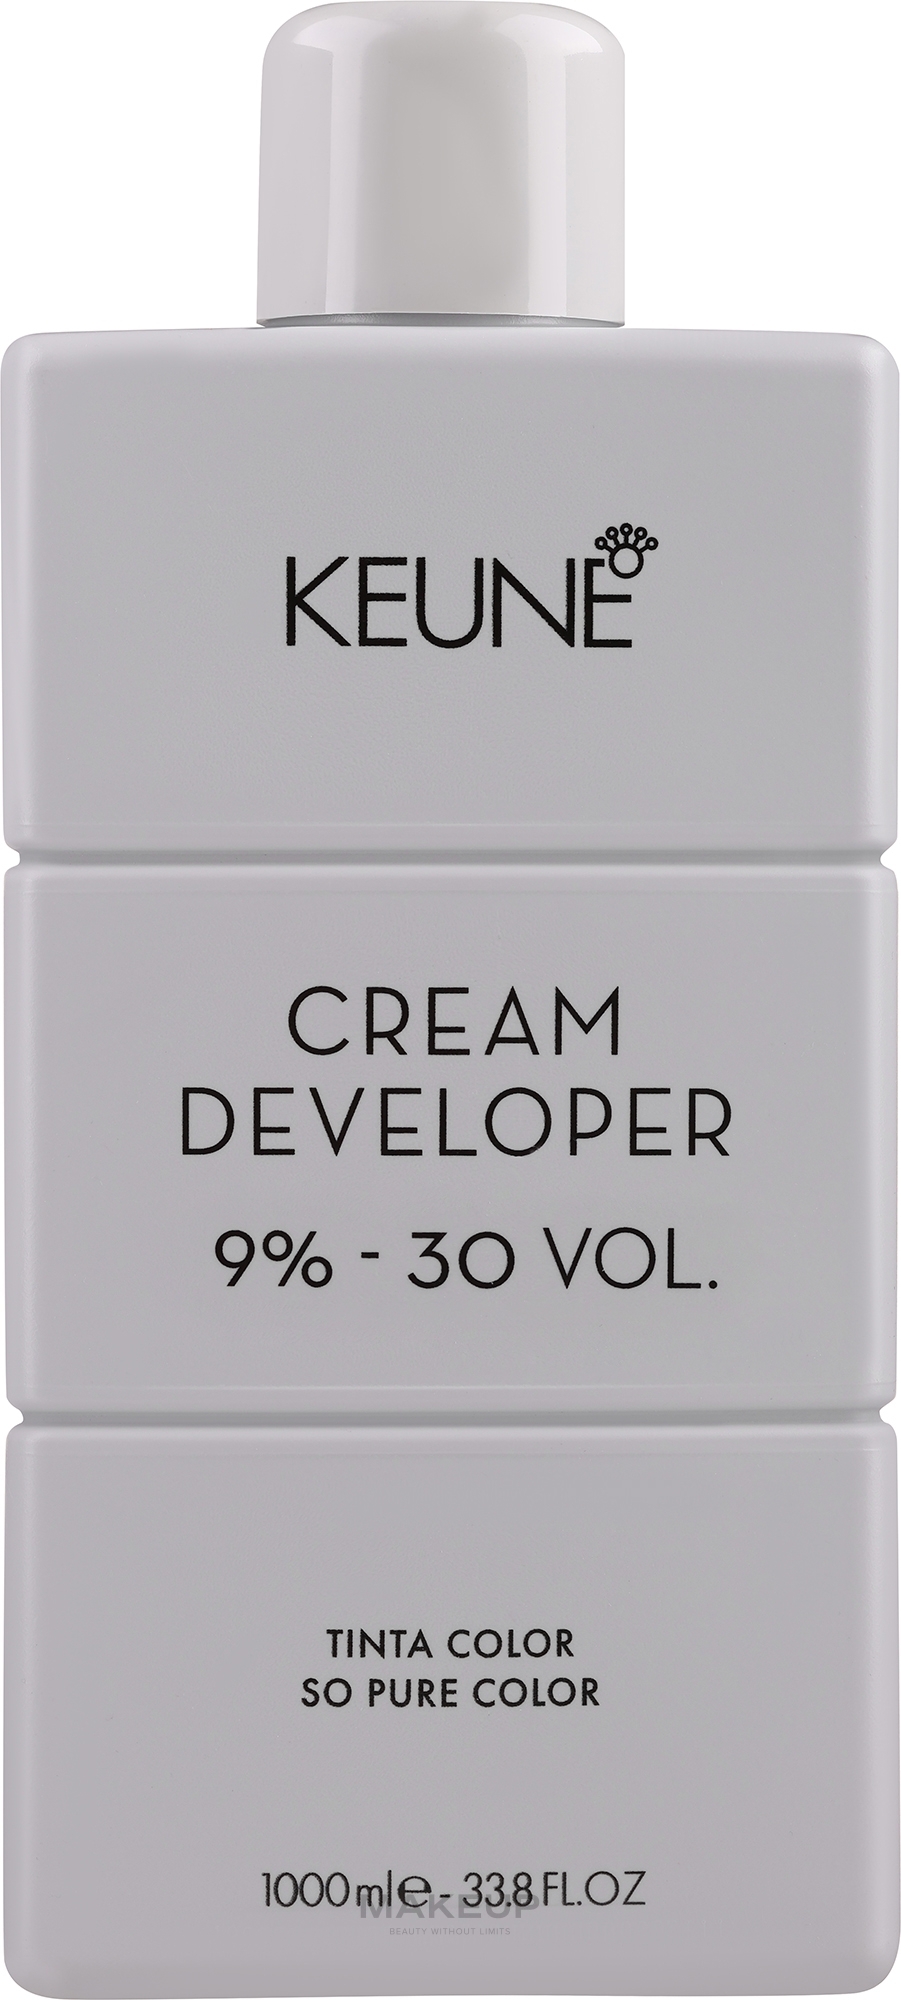 Крем-окислитель 9% - Keune Tinta Cream Developer 9% 30 Vol — фото 1000ml